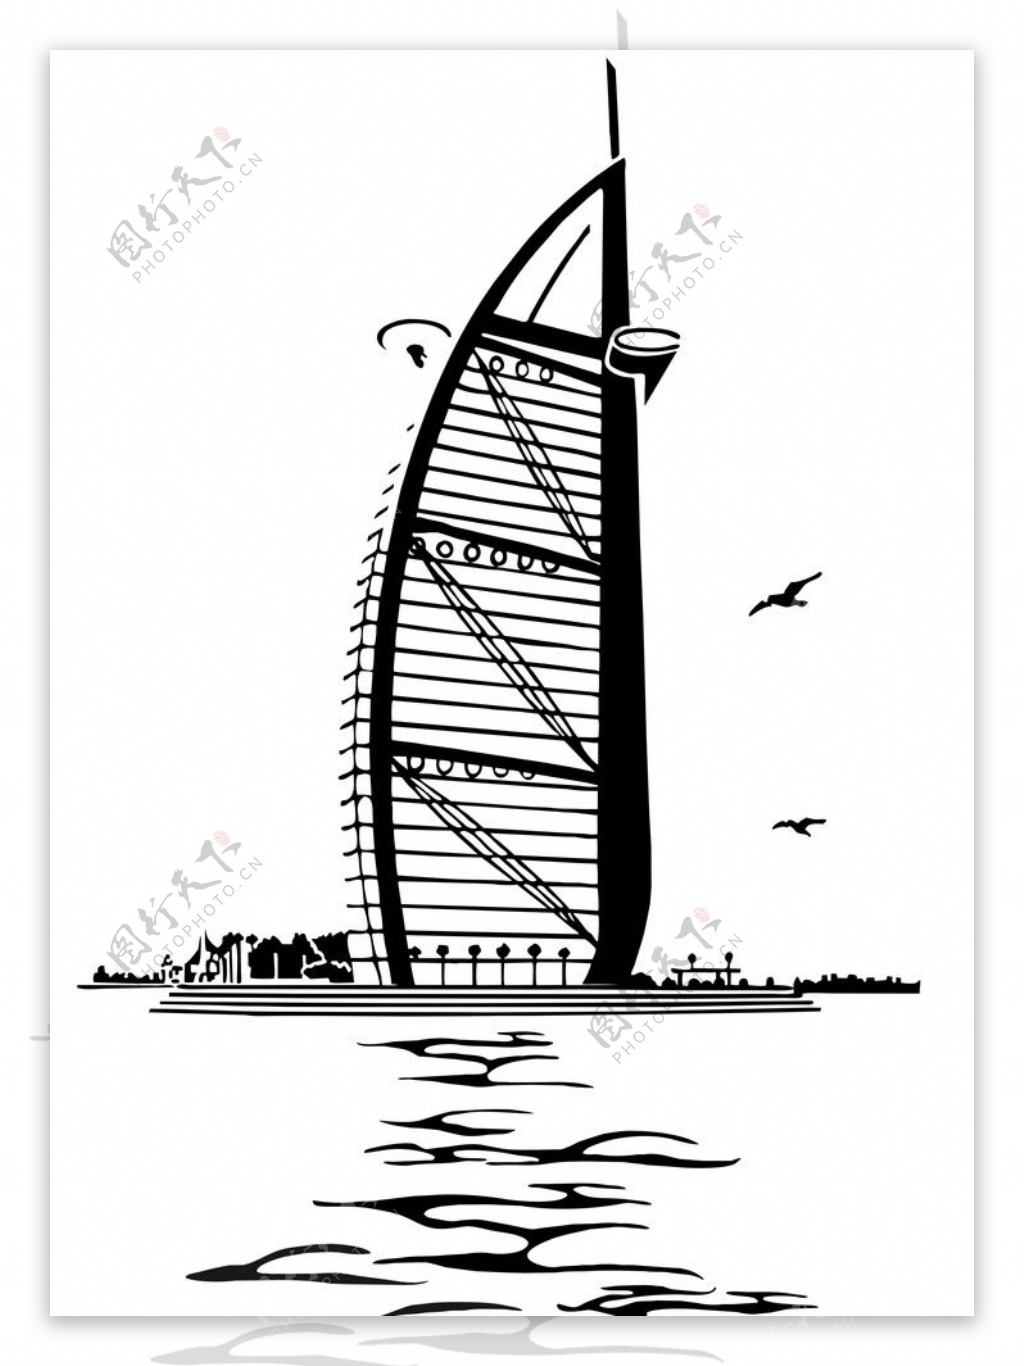 迪拜帆船酒店图片